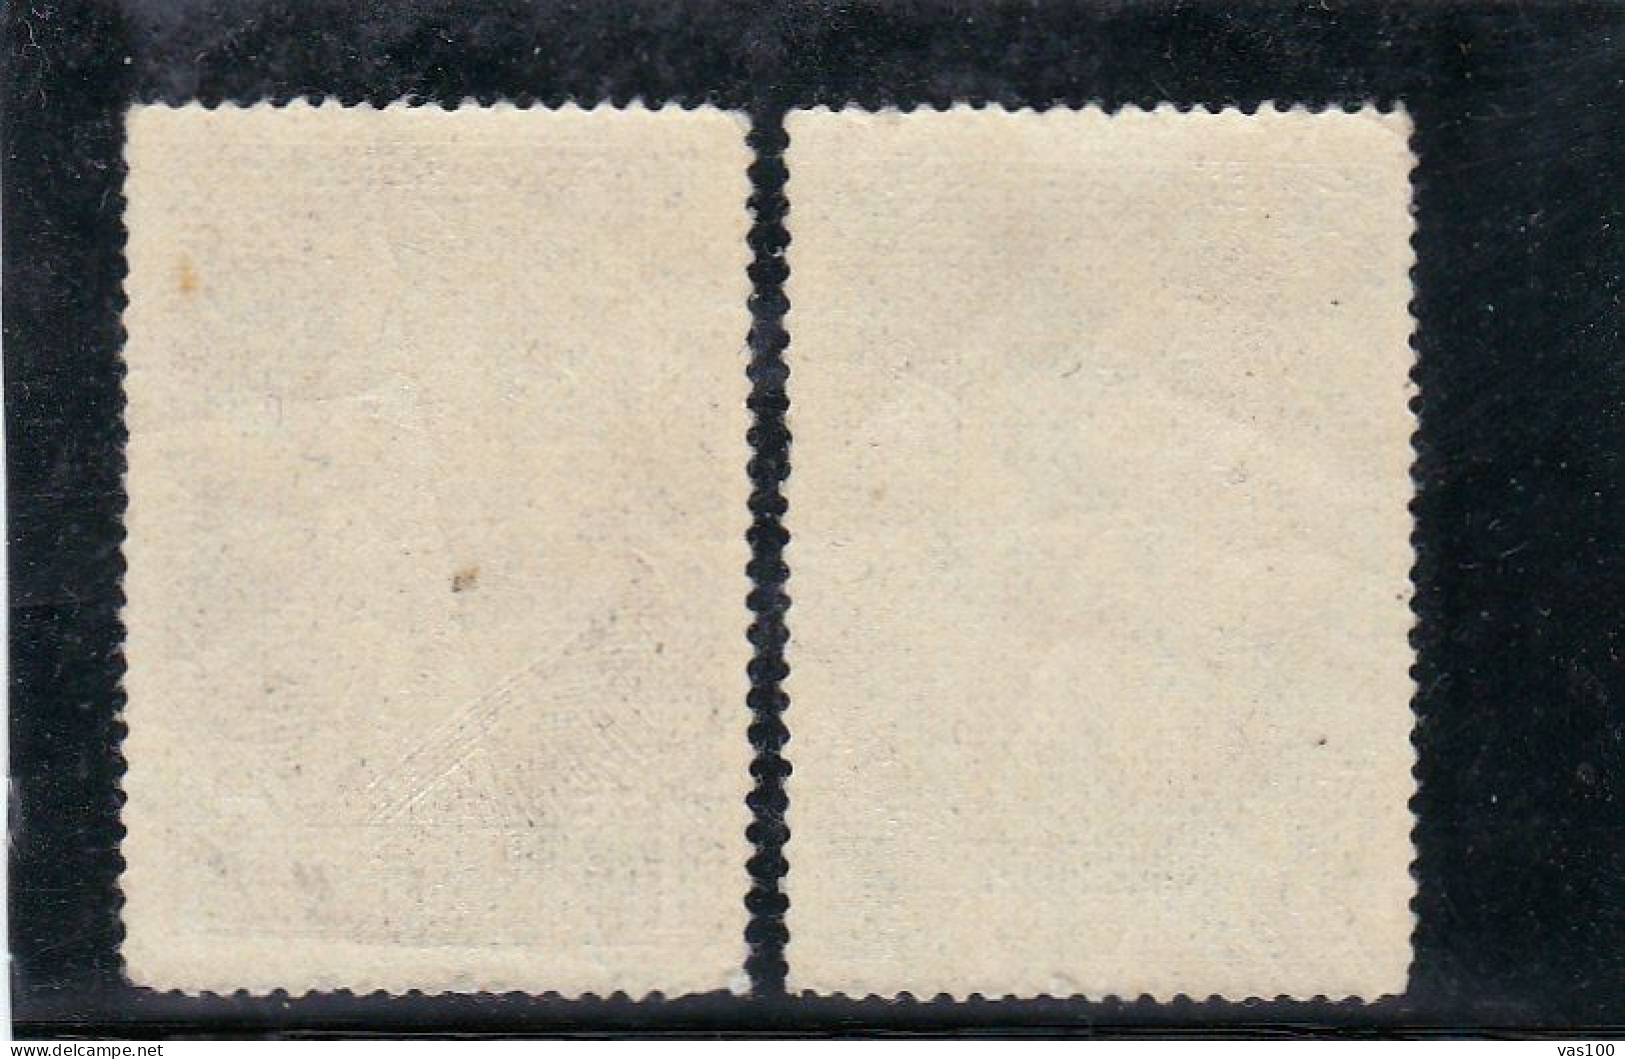 MUSIC,GEORGE ENESCU 1956  MI.Nr.1630/31 ,MNH ROMANIA - Unused Stamps